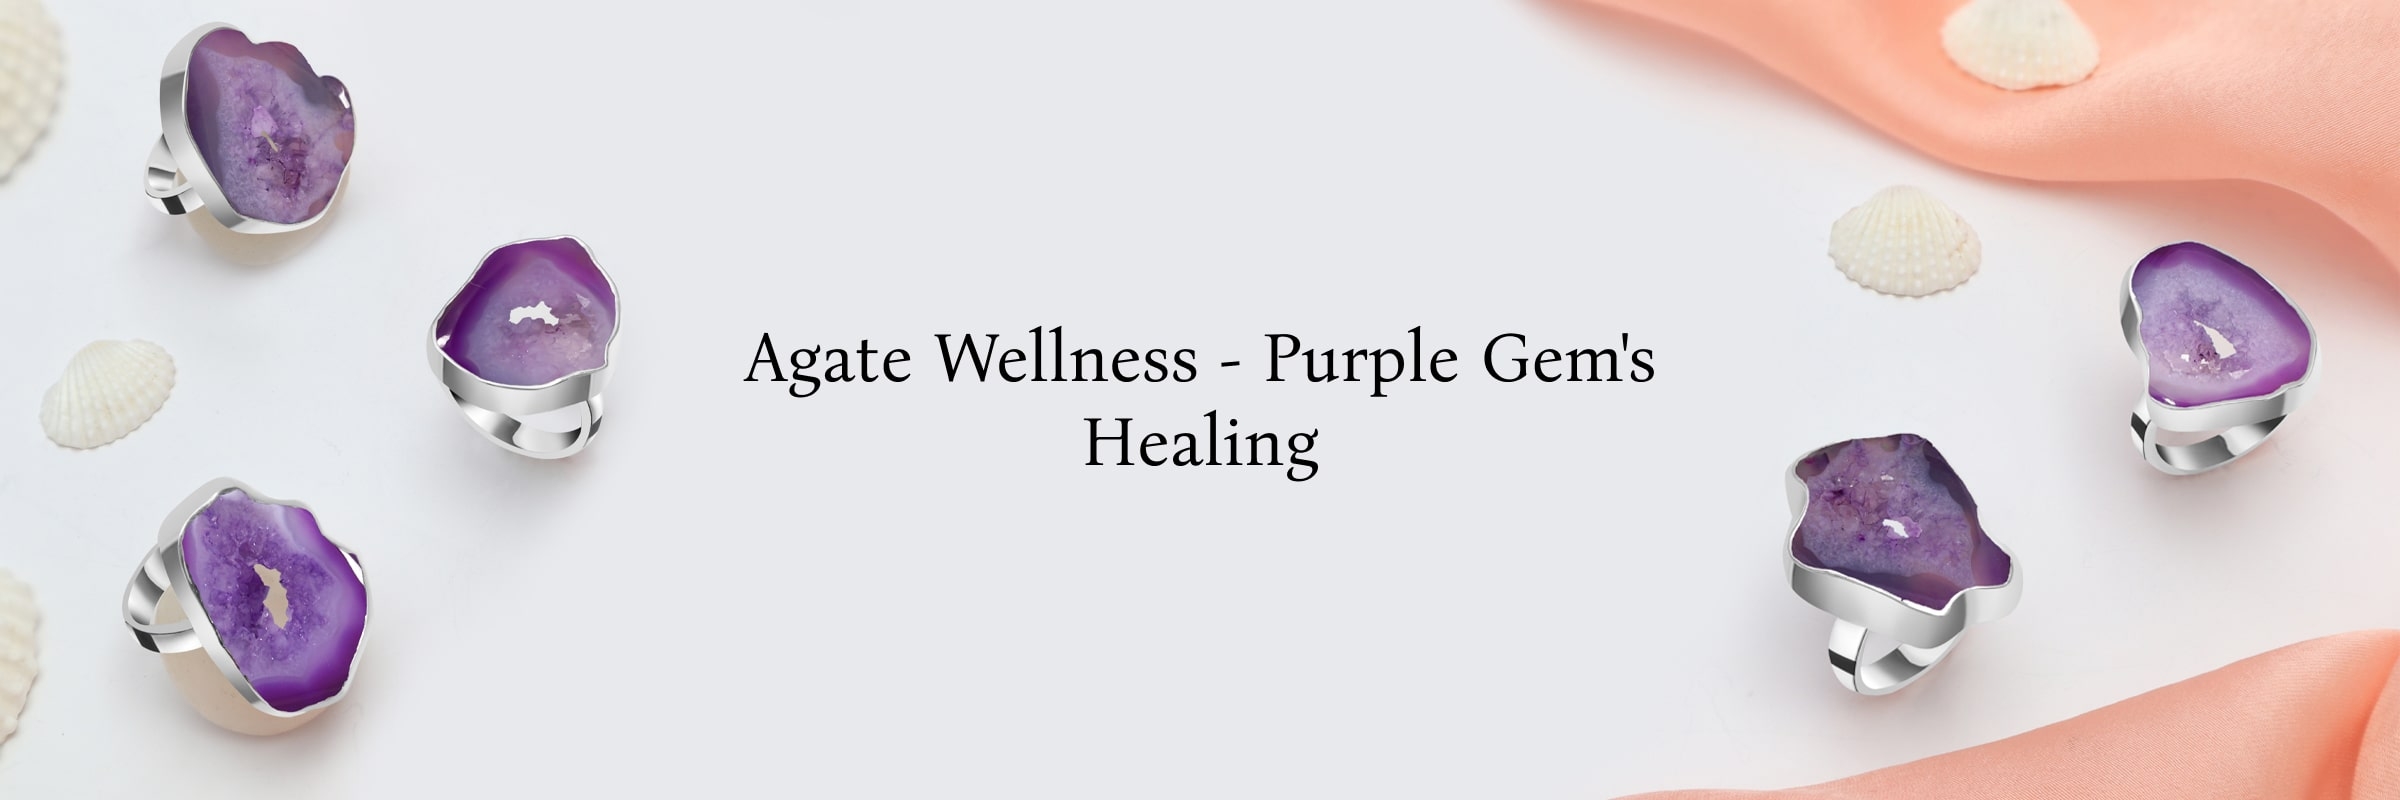 Healing properties purple agate